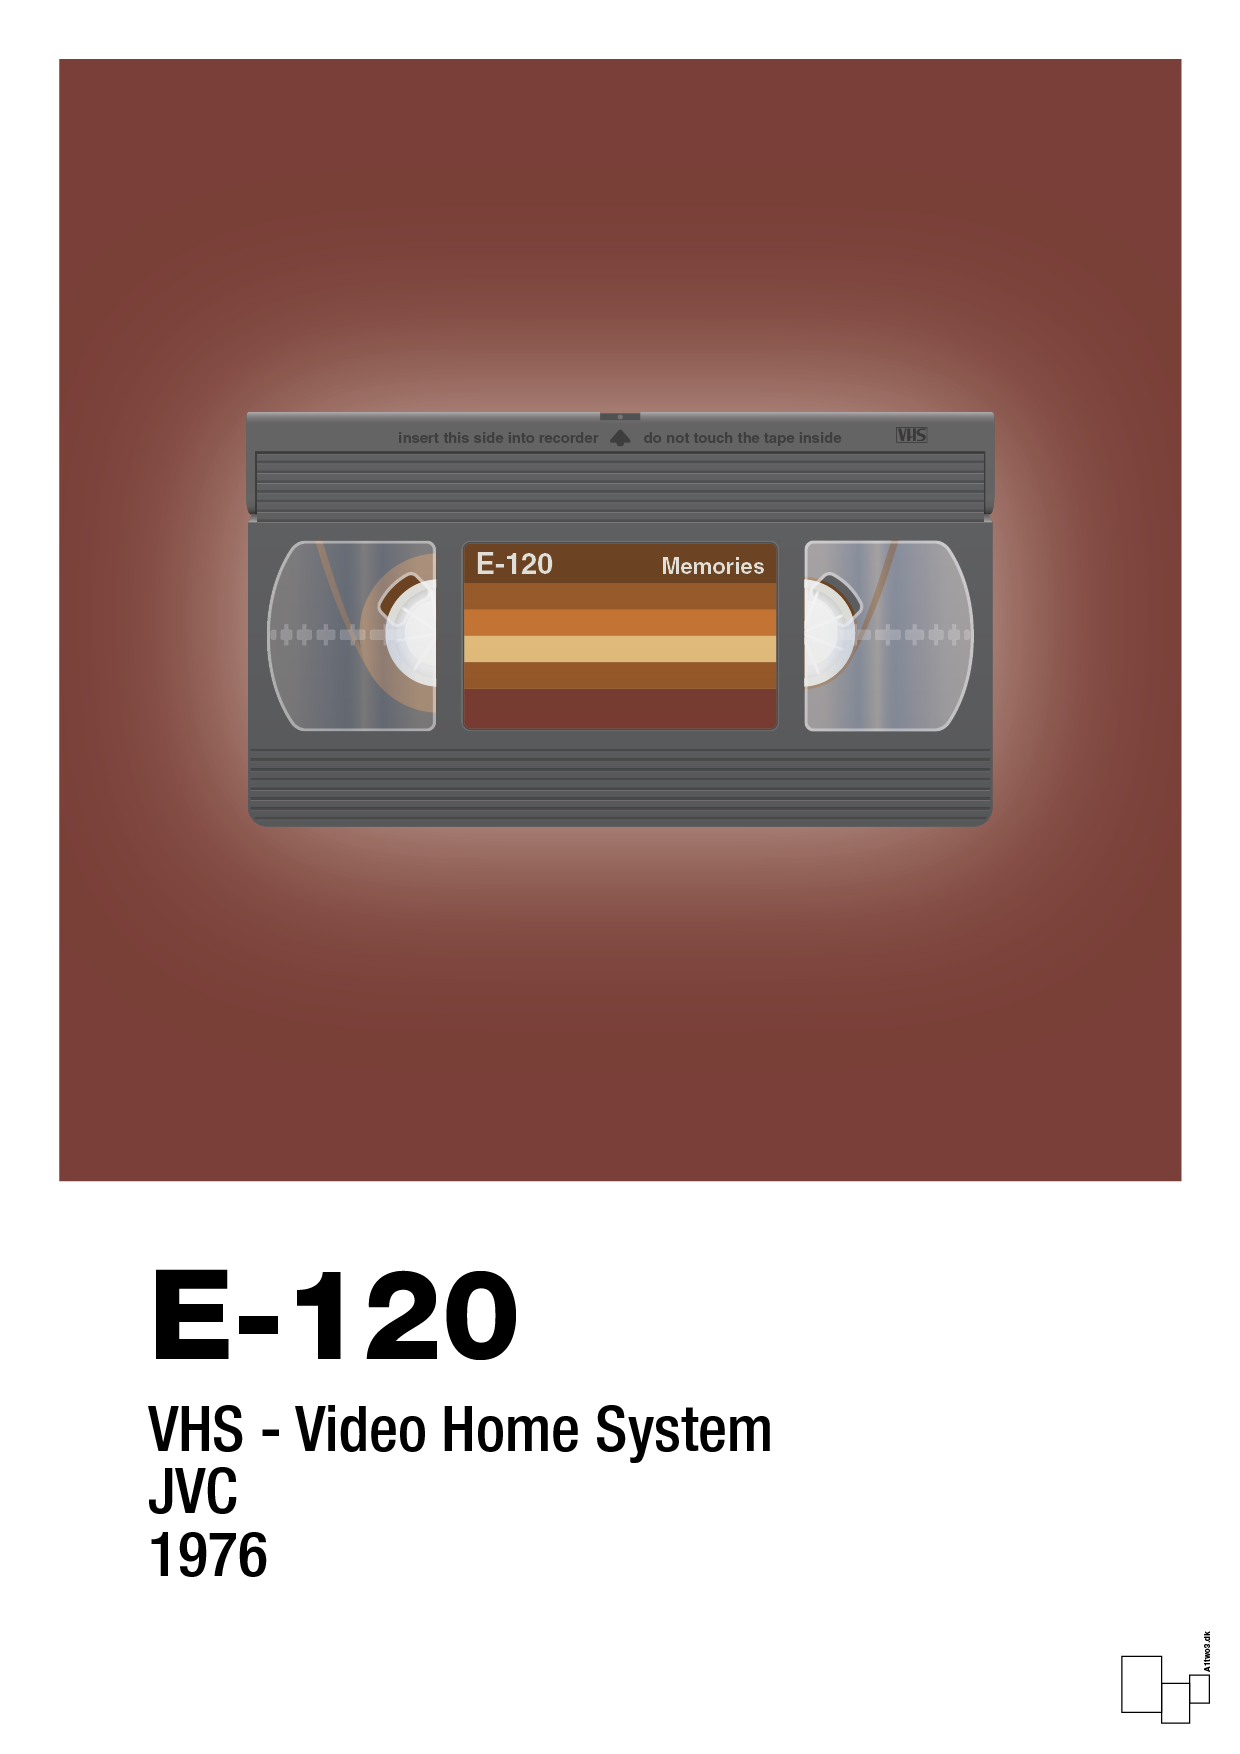 videobånd e-120 - Plakat med Grafik i Red Pepper